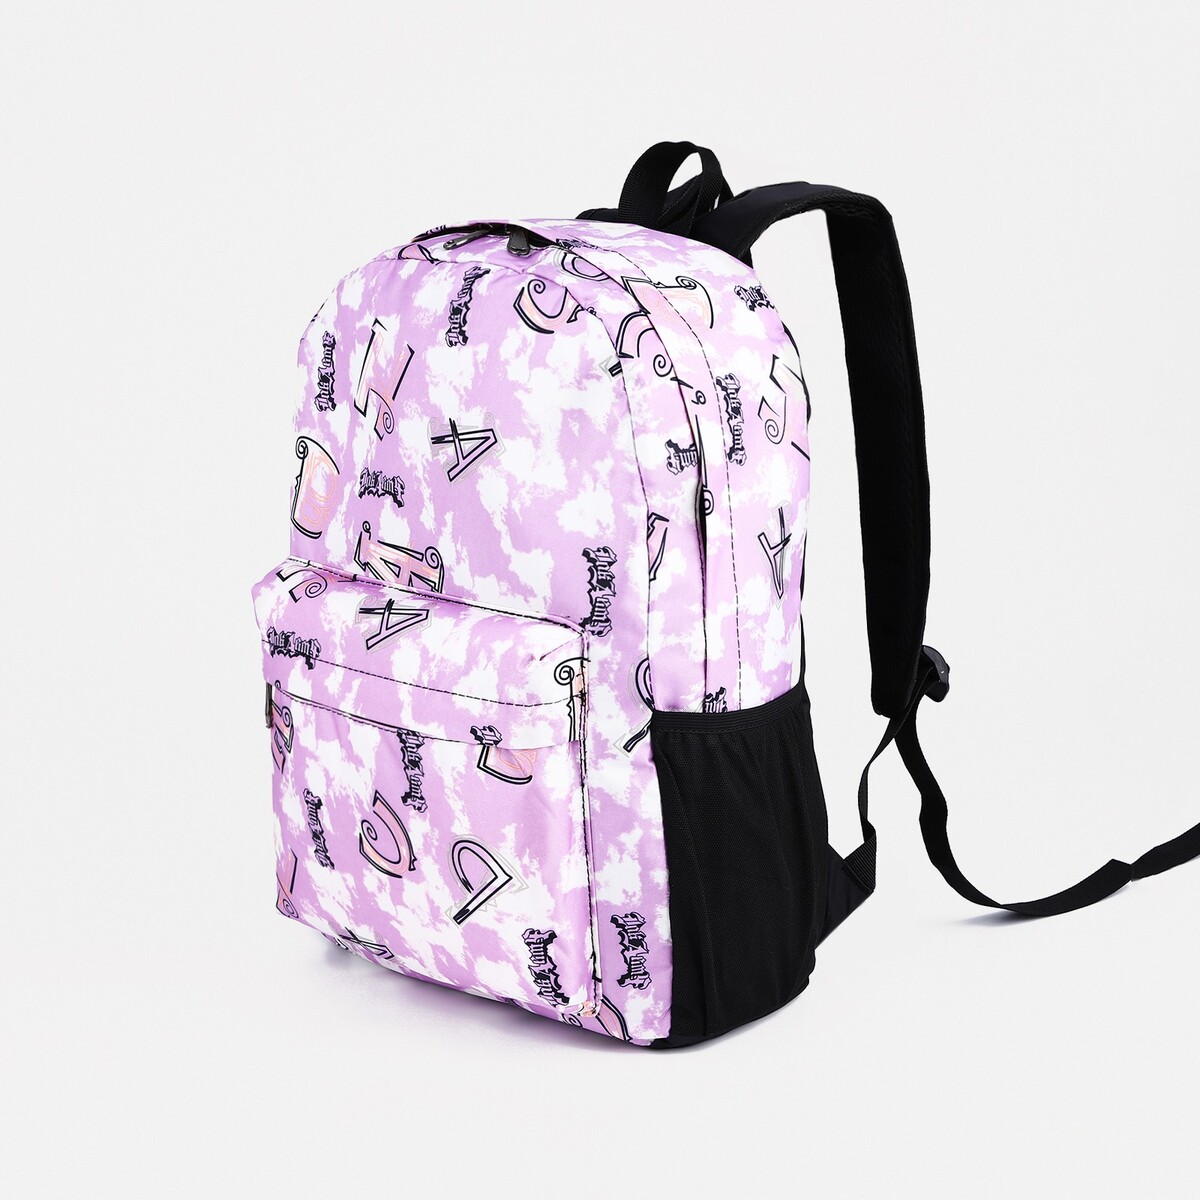 Рюкзак школьный из текстиля на молнии, 3 кармана, цвет фиолетовый рюкзак rafl панды фиолетовый